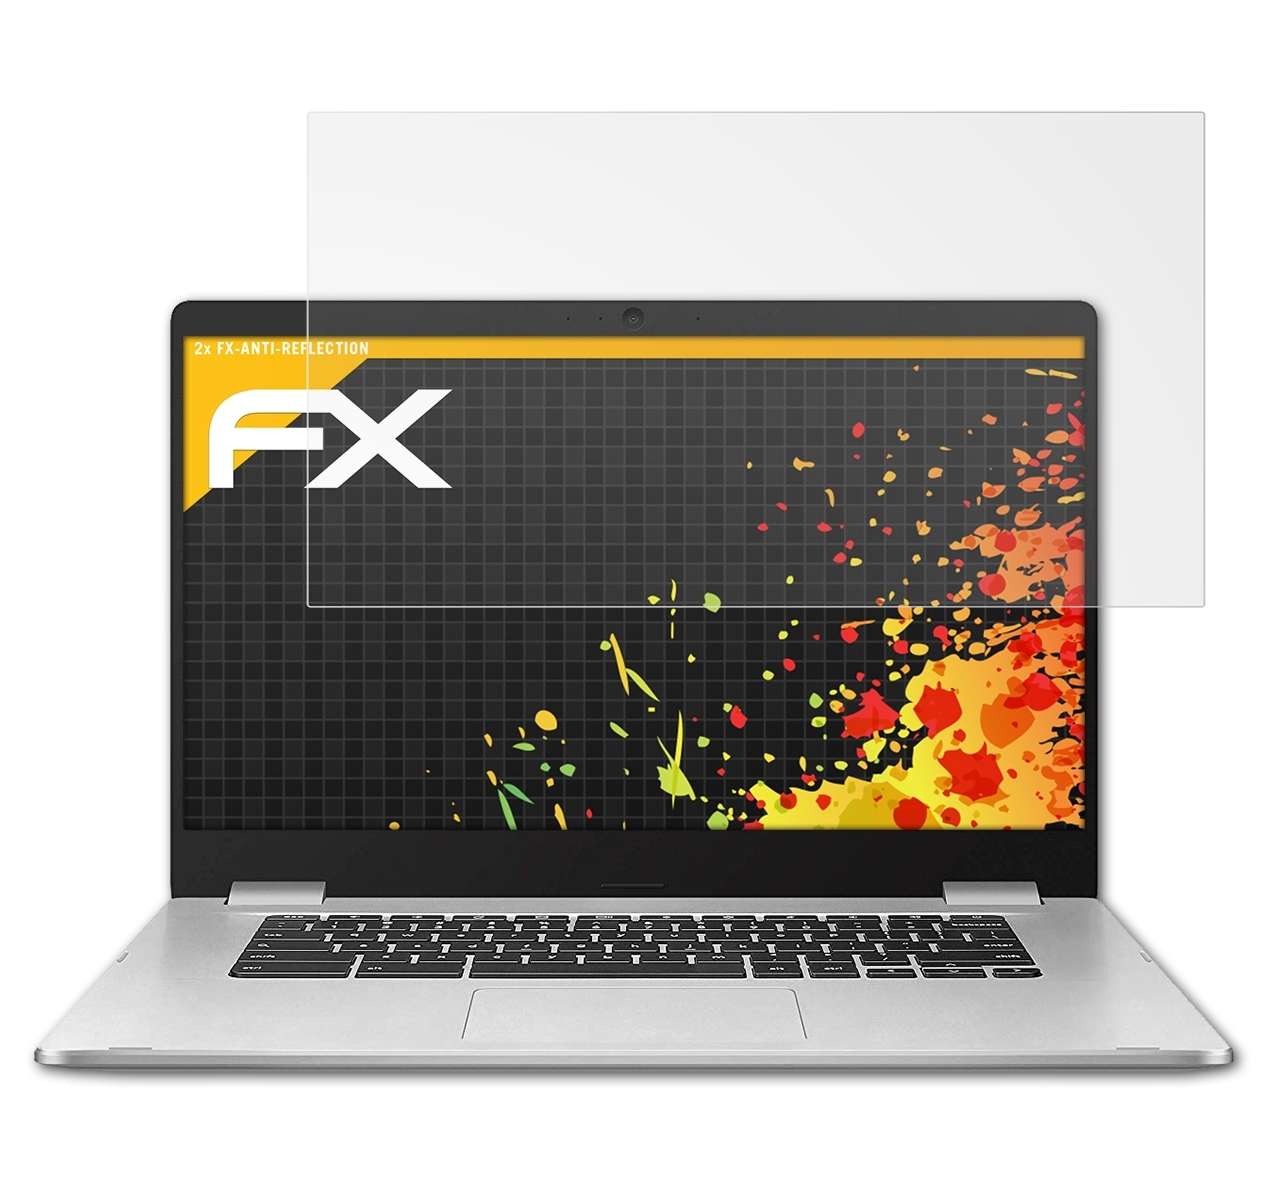 2x (C523NA)) C523 Chromebook ATFOLIX Displayschutz(für FX-Antireflex Asus